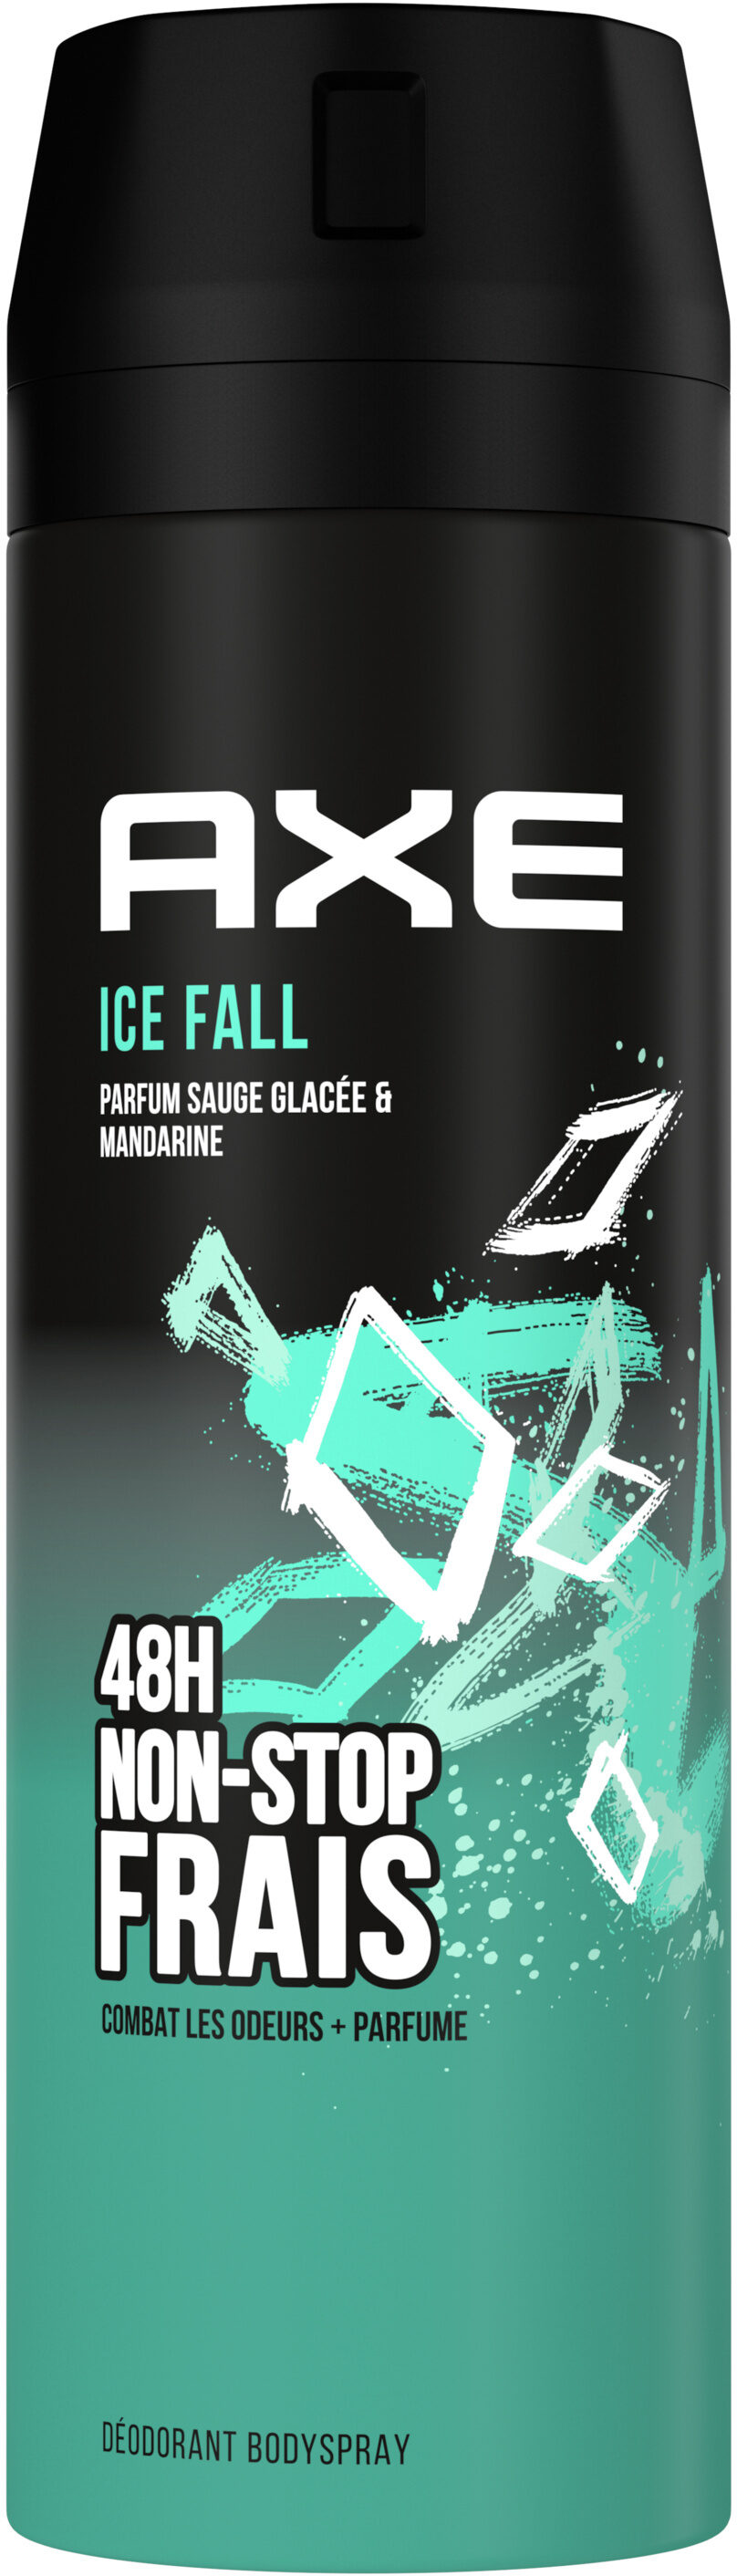 AXE Déodorant Homme Bodyspray Ice Fall 48h Non-Stop Frais - Produit - fr